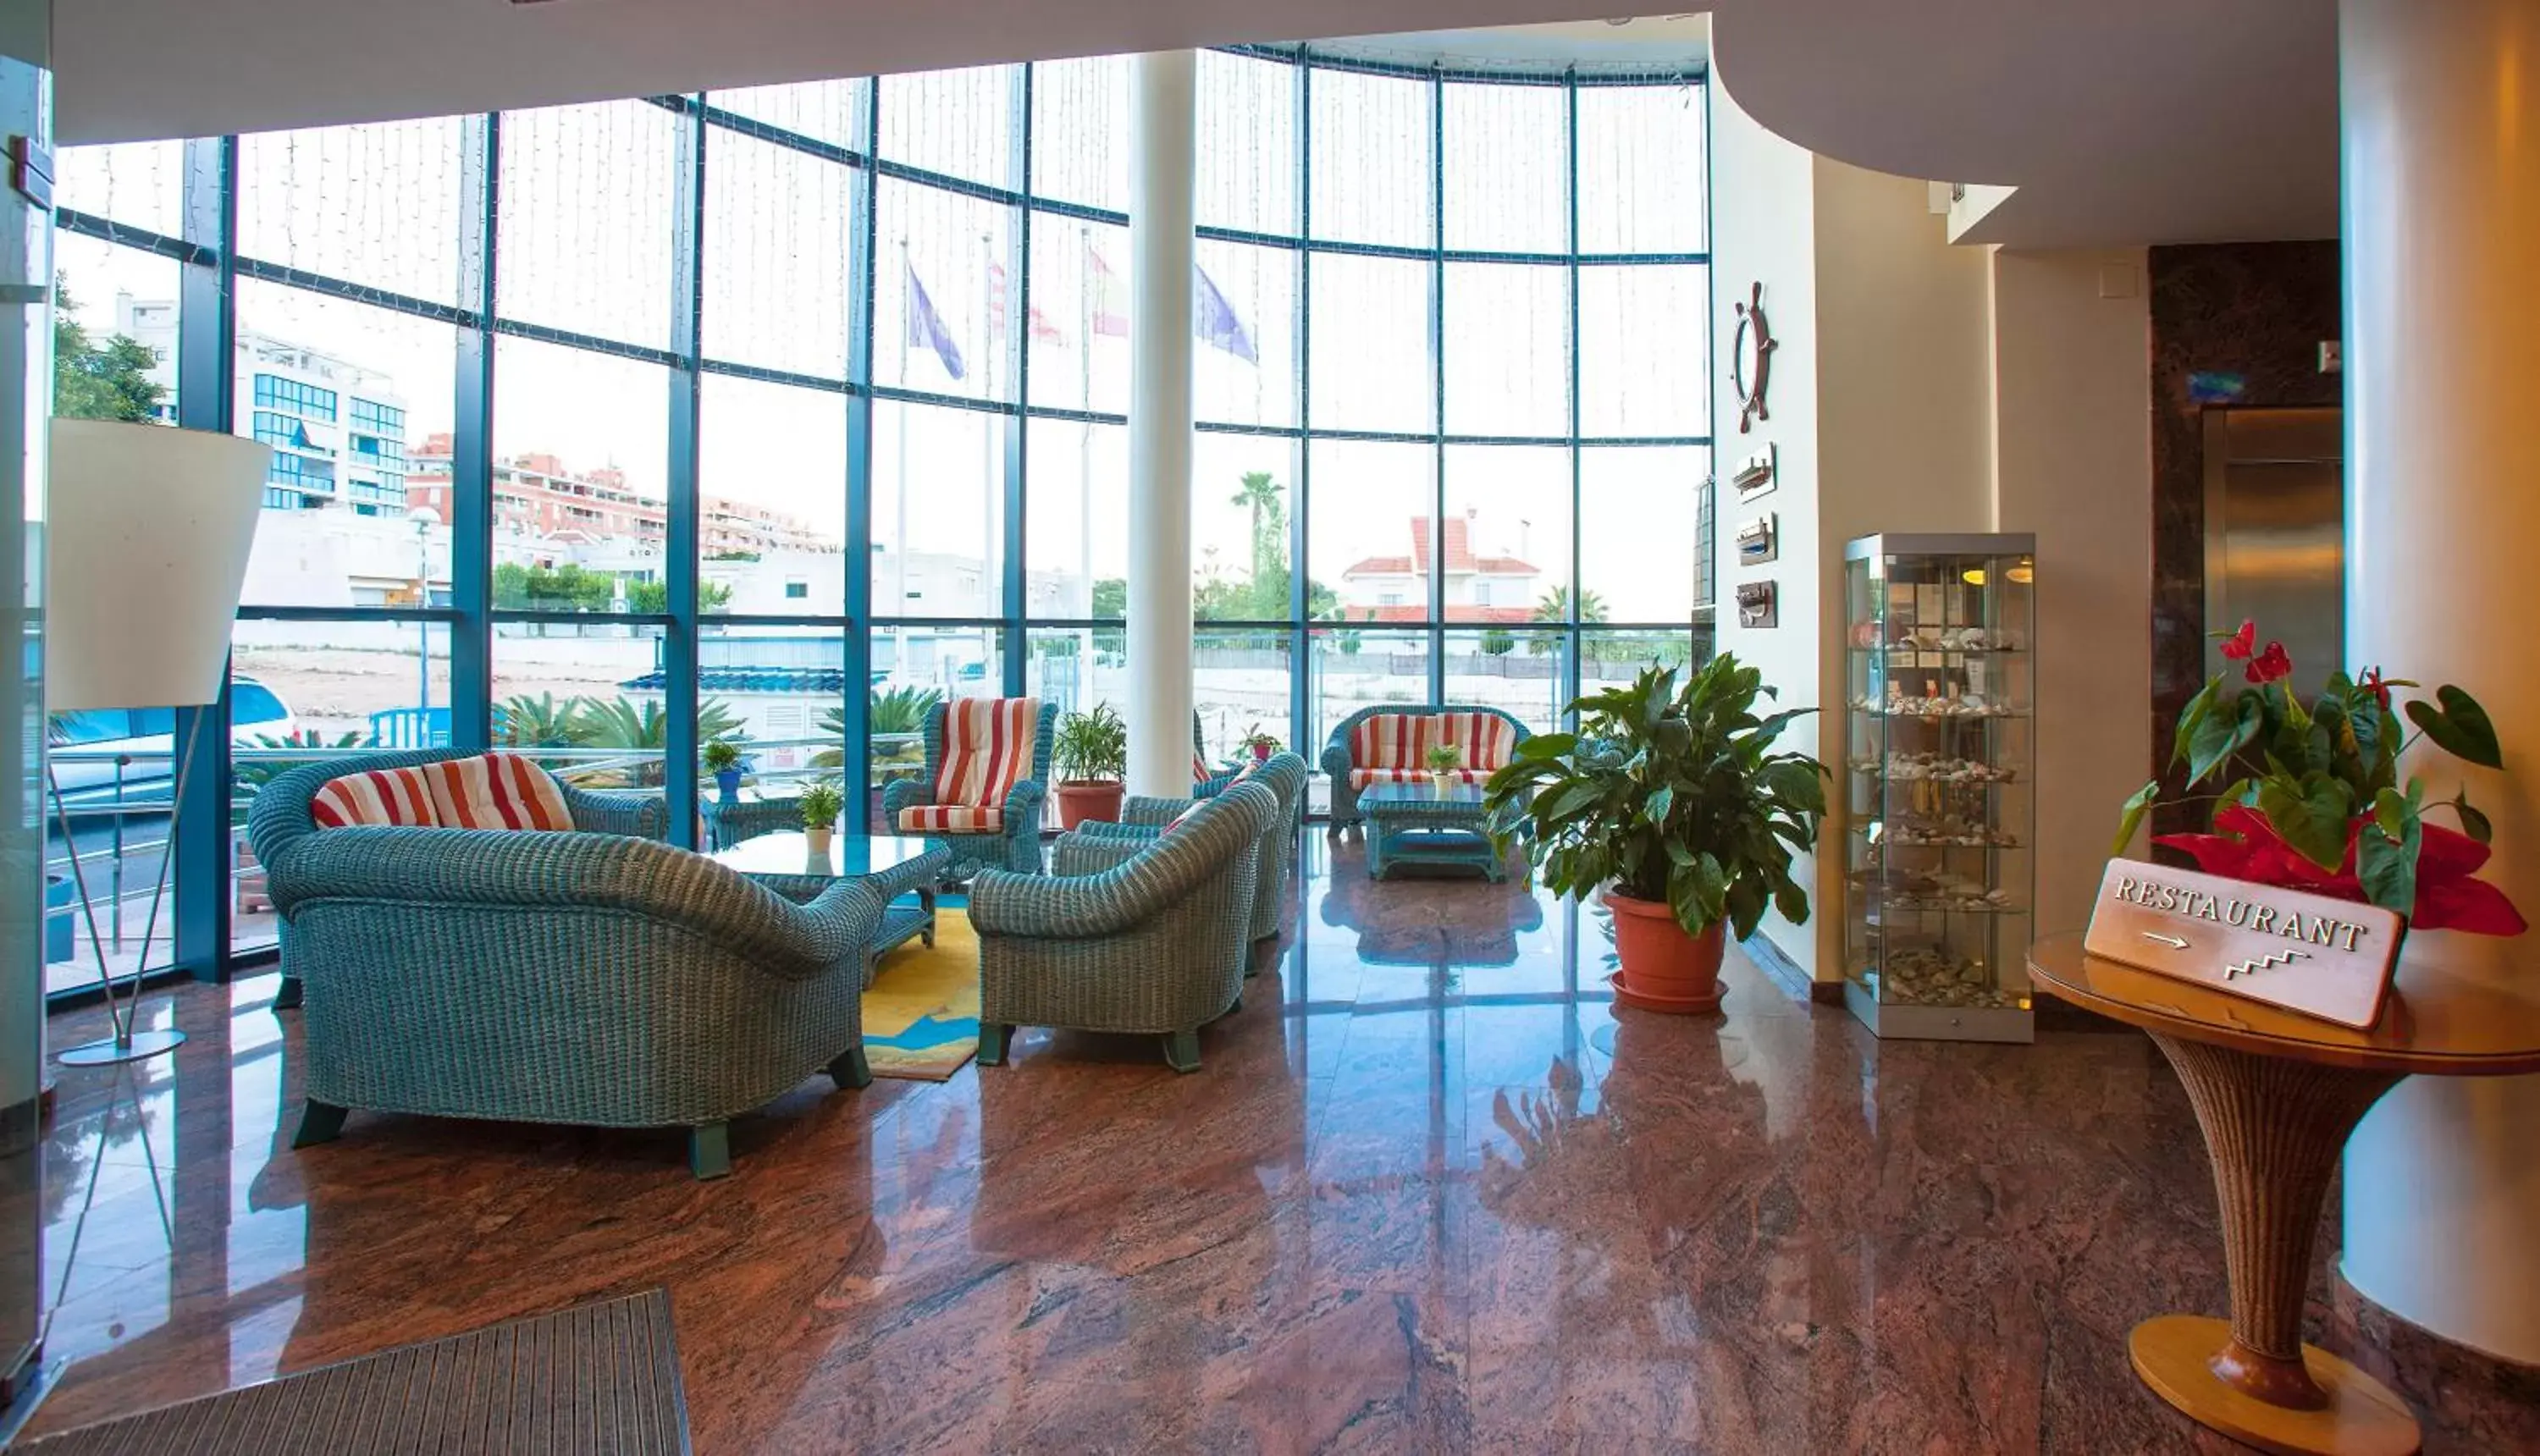 Lobby or reception, Lobby/Reception in Hotel Miami Mar